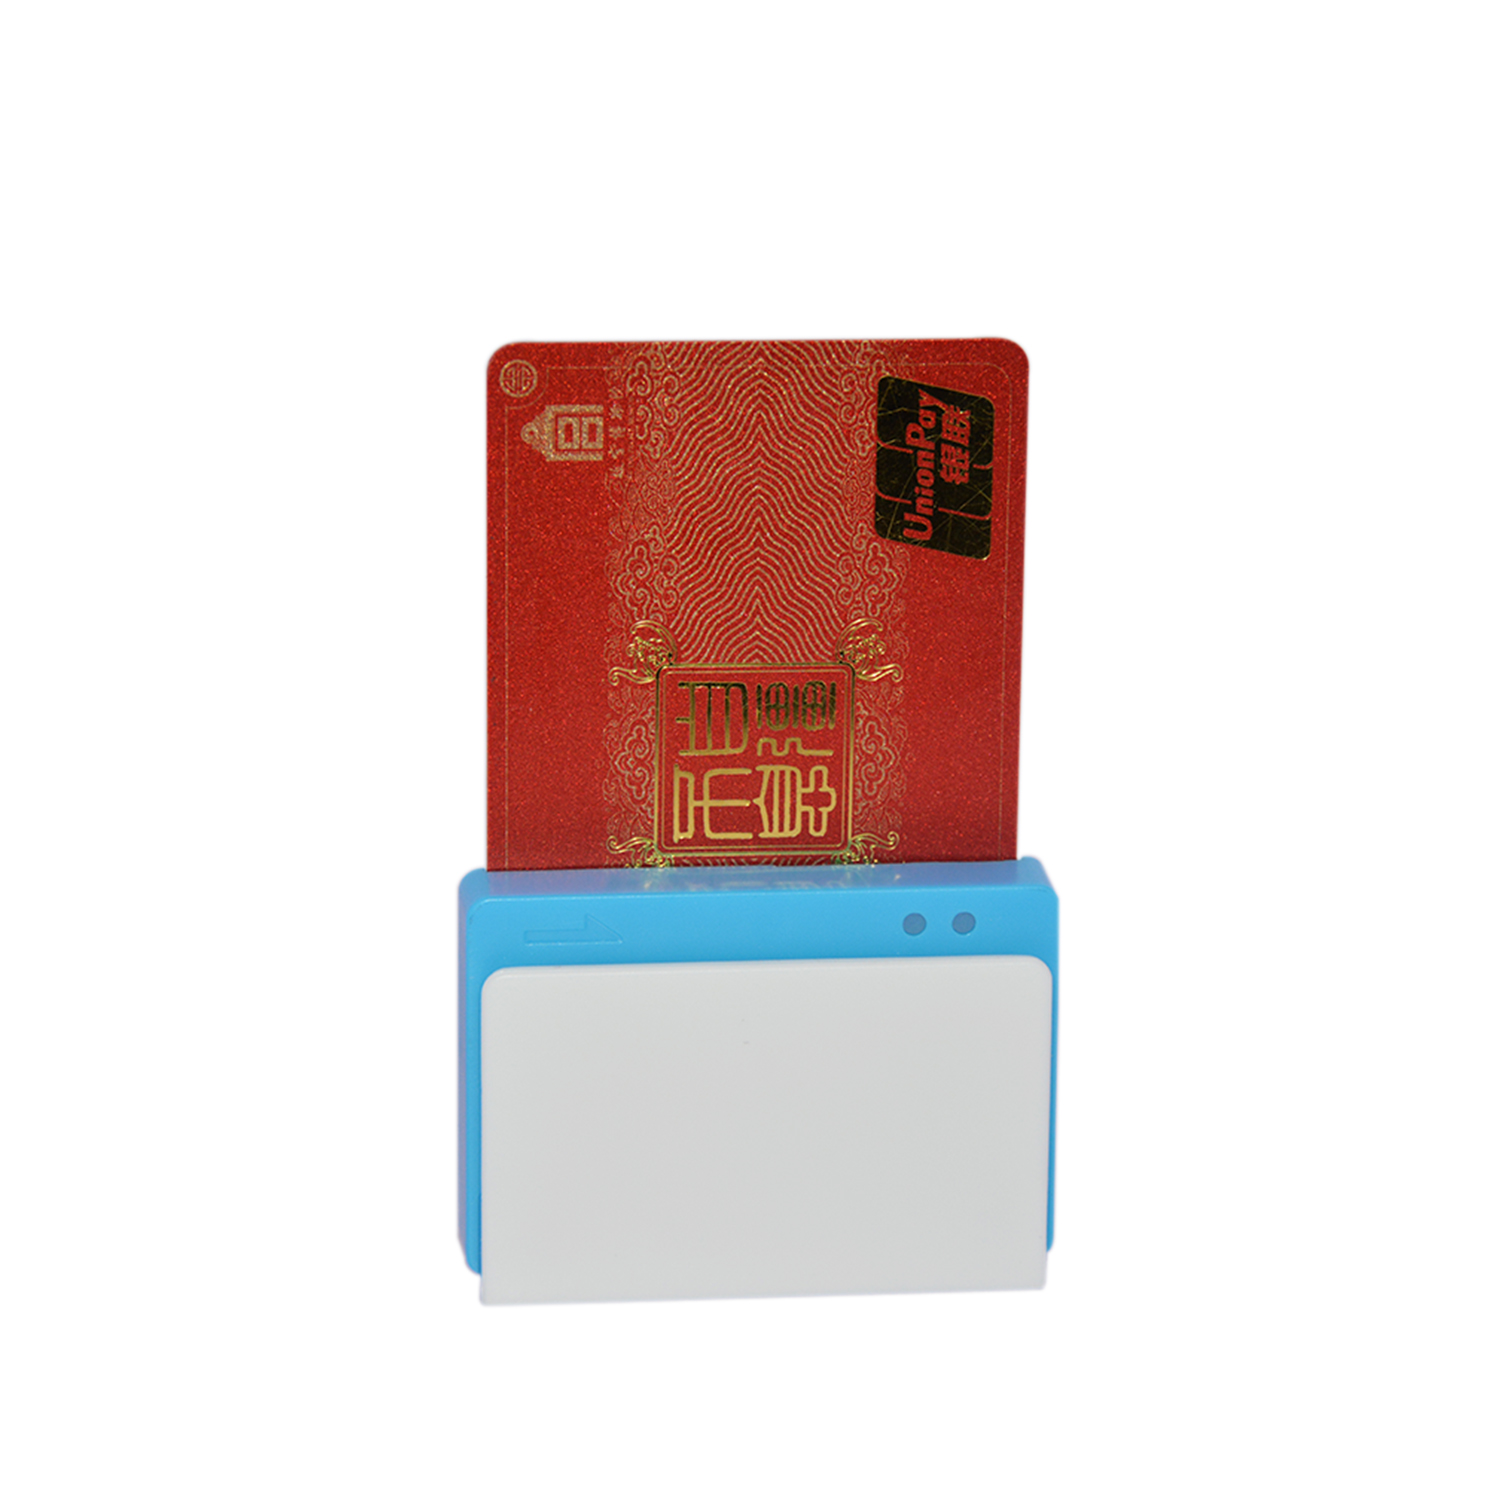 Lector de tarjetas móvil caliente del IOS de Android Bluetooth de la venta para el pago móvil MPR100